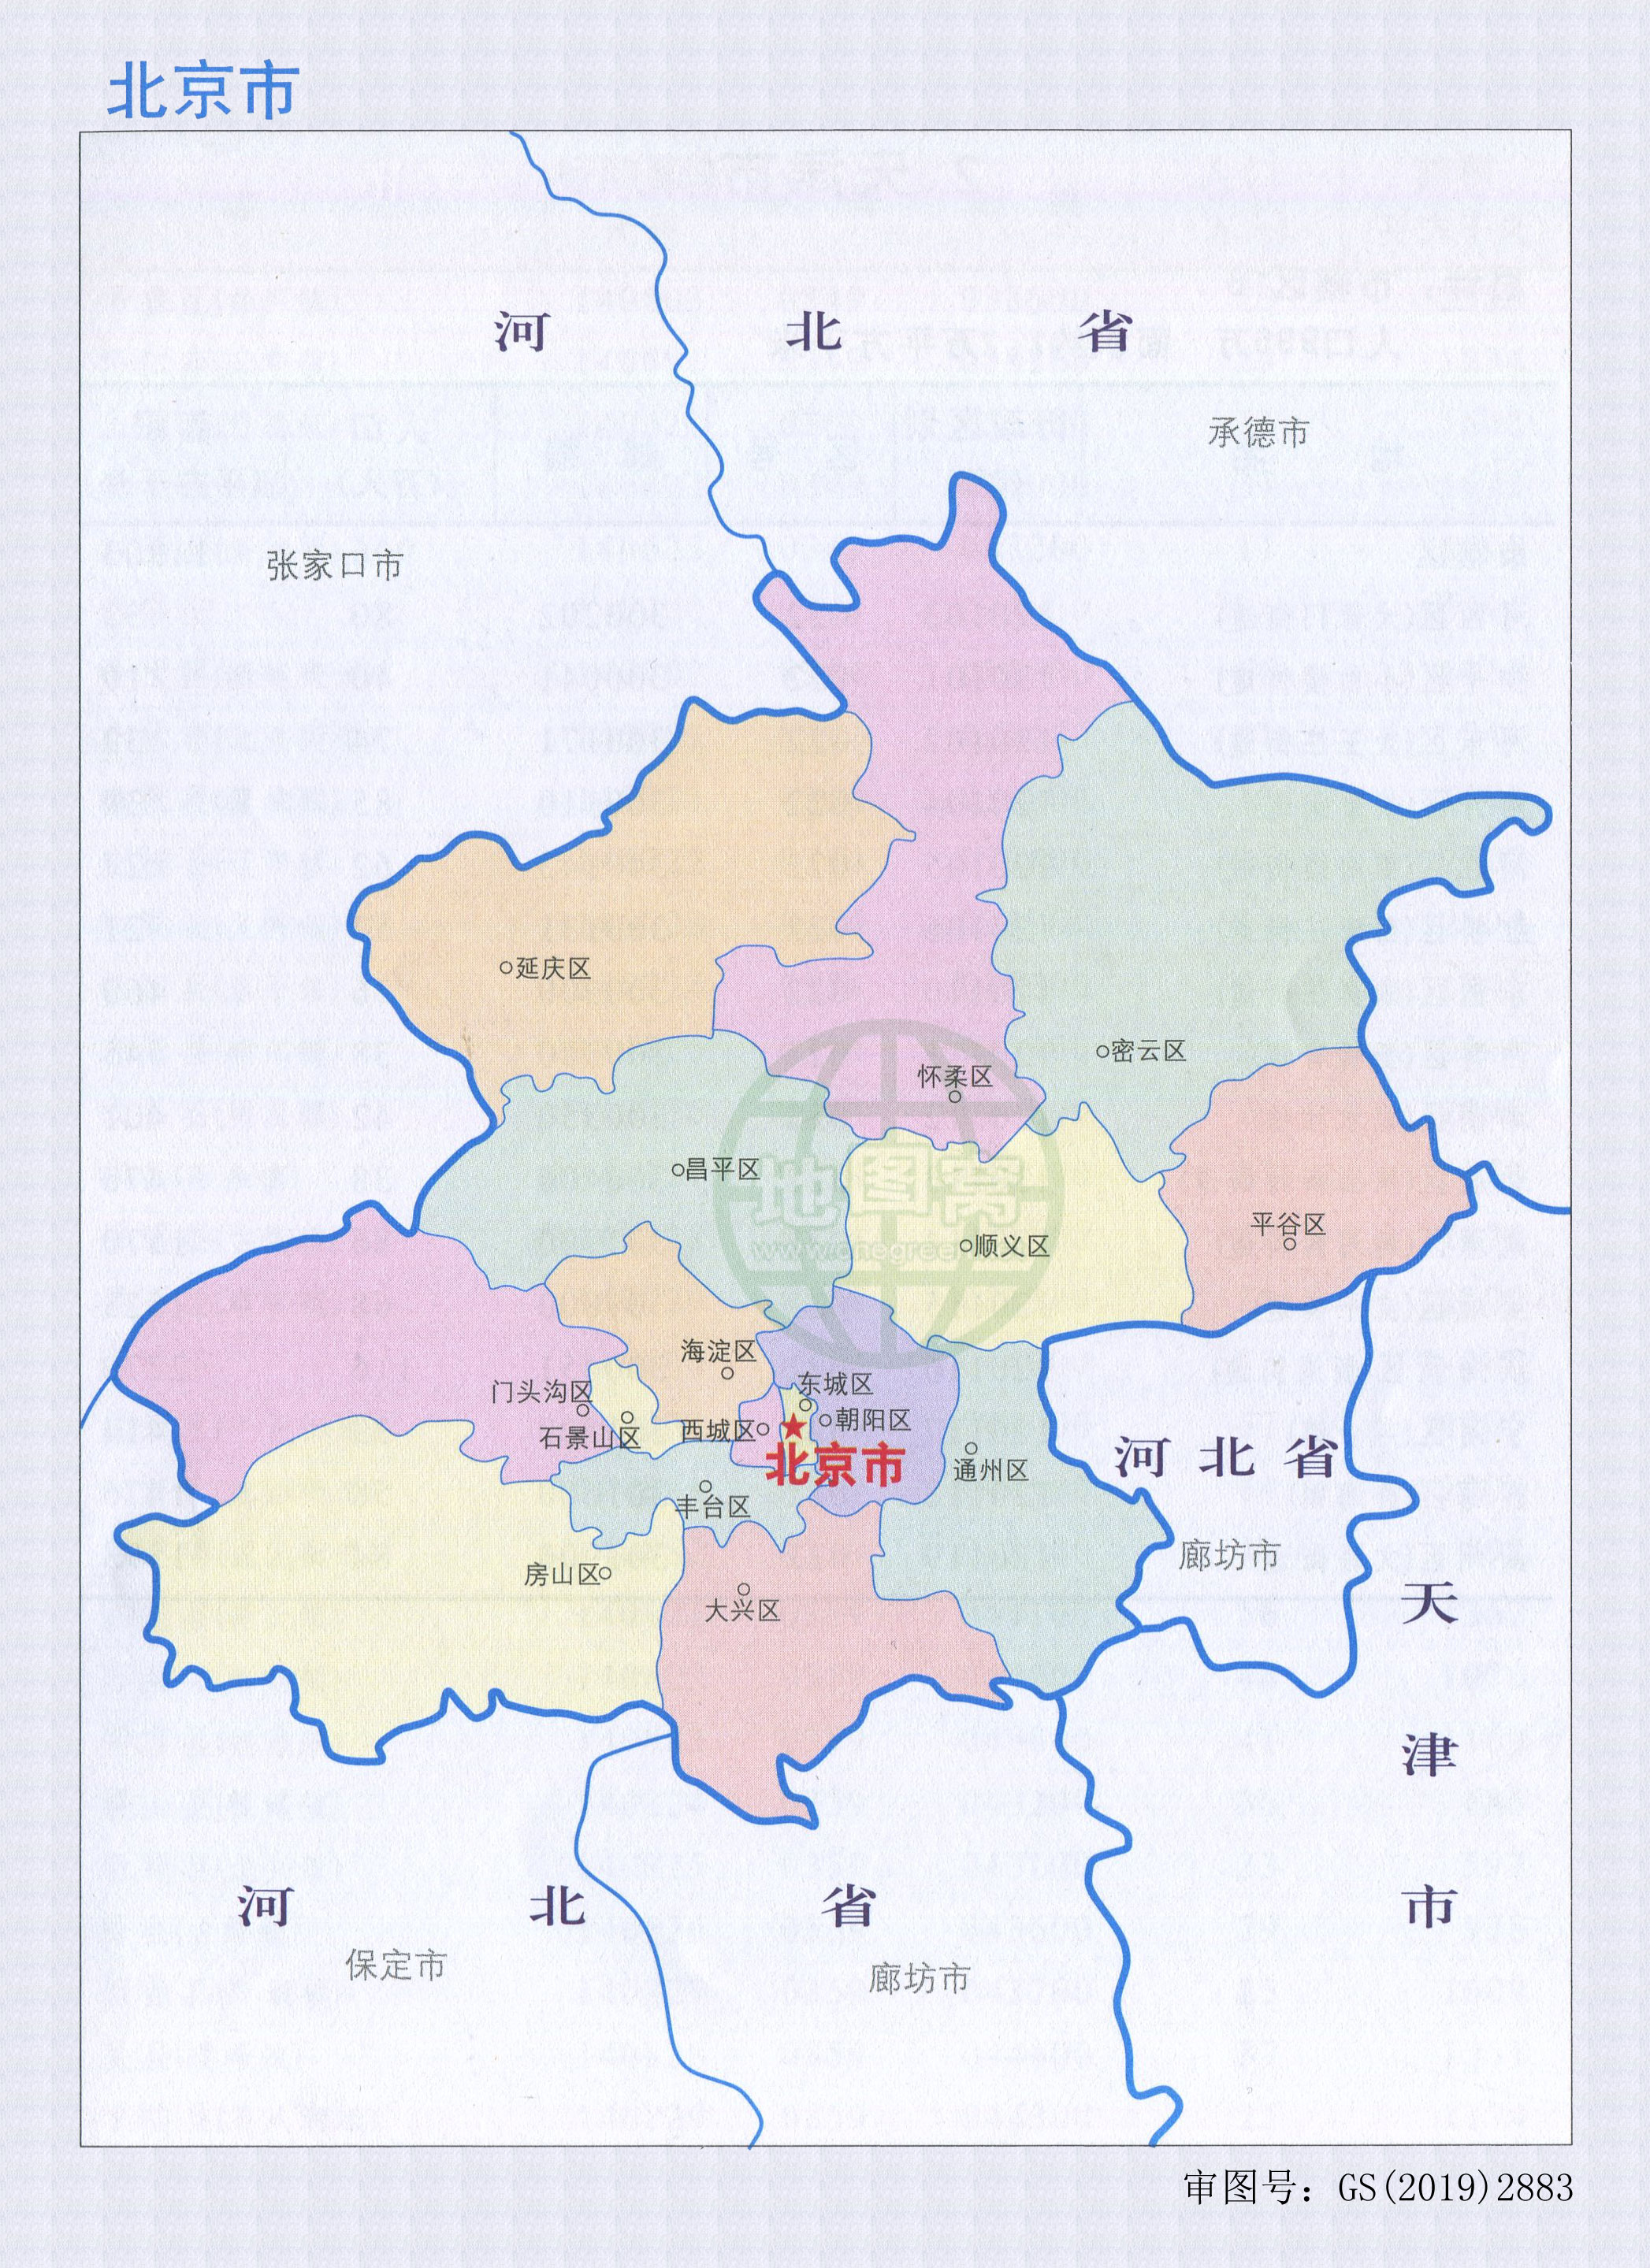 北京市行政区划图 行政统计表(2019)_北京地图库_地图